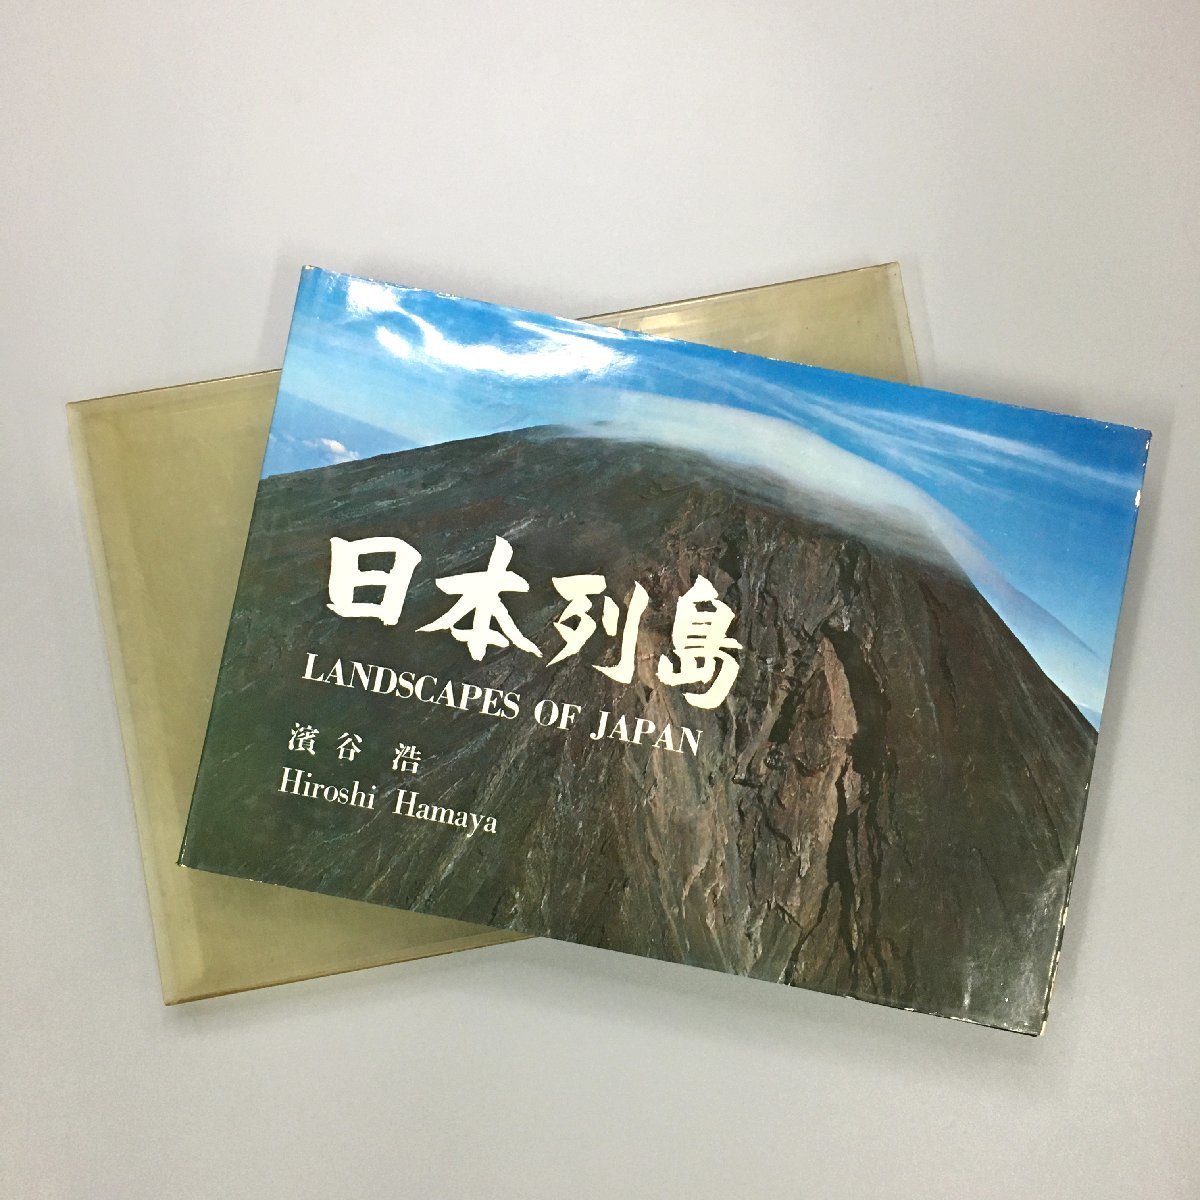 ليس للبيع الأرخبيل الياباني منظر طبيعي لليابان مجموعة صور هيروشي هاماتاني هيبونشا الطبعة الأولى 1964 مجموعة الأعمال, فن, ترفيه, إلبوم الصور, طبيعة, منظر جمالي